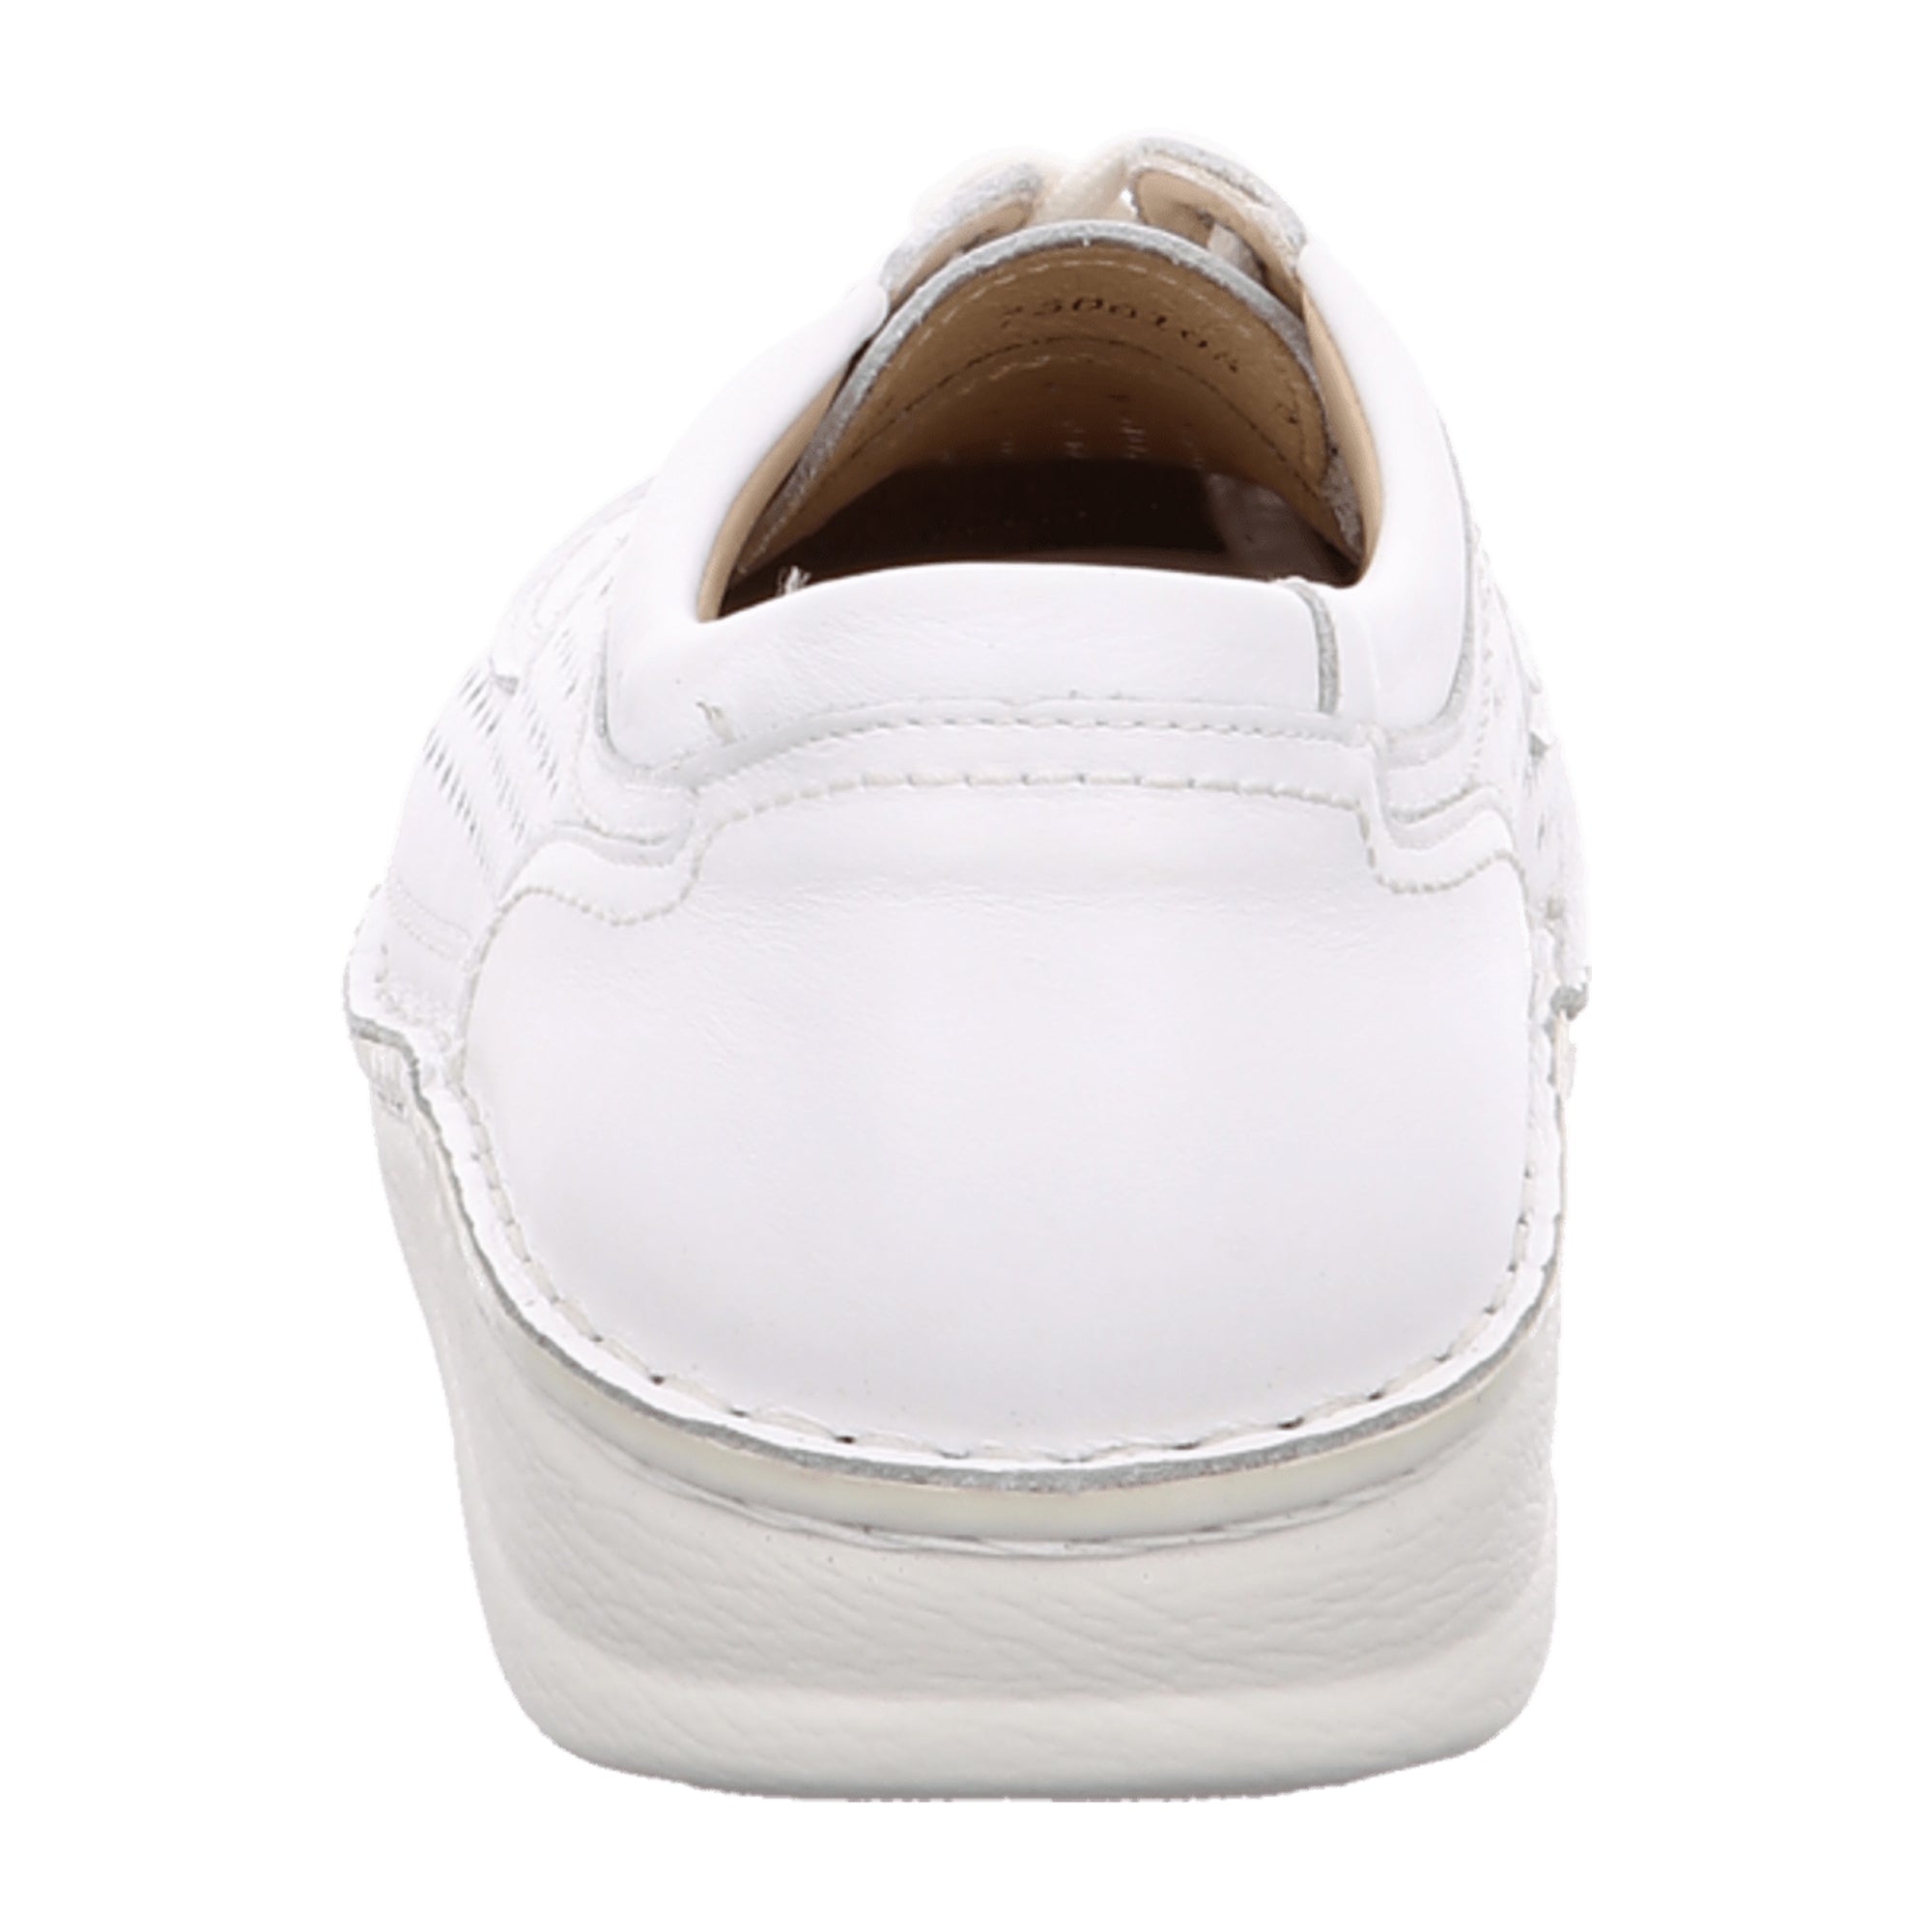 Finn Comfort Baden Men’s Comfort Shoes, White – Stylish & Durable